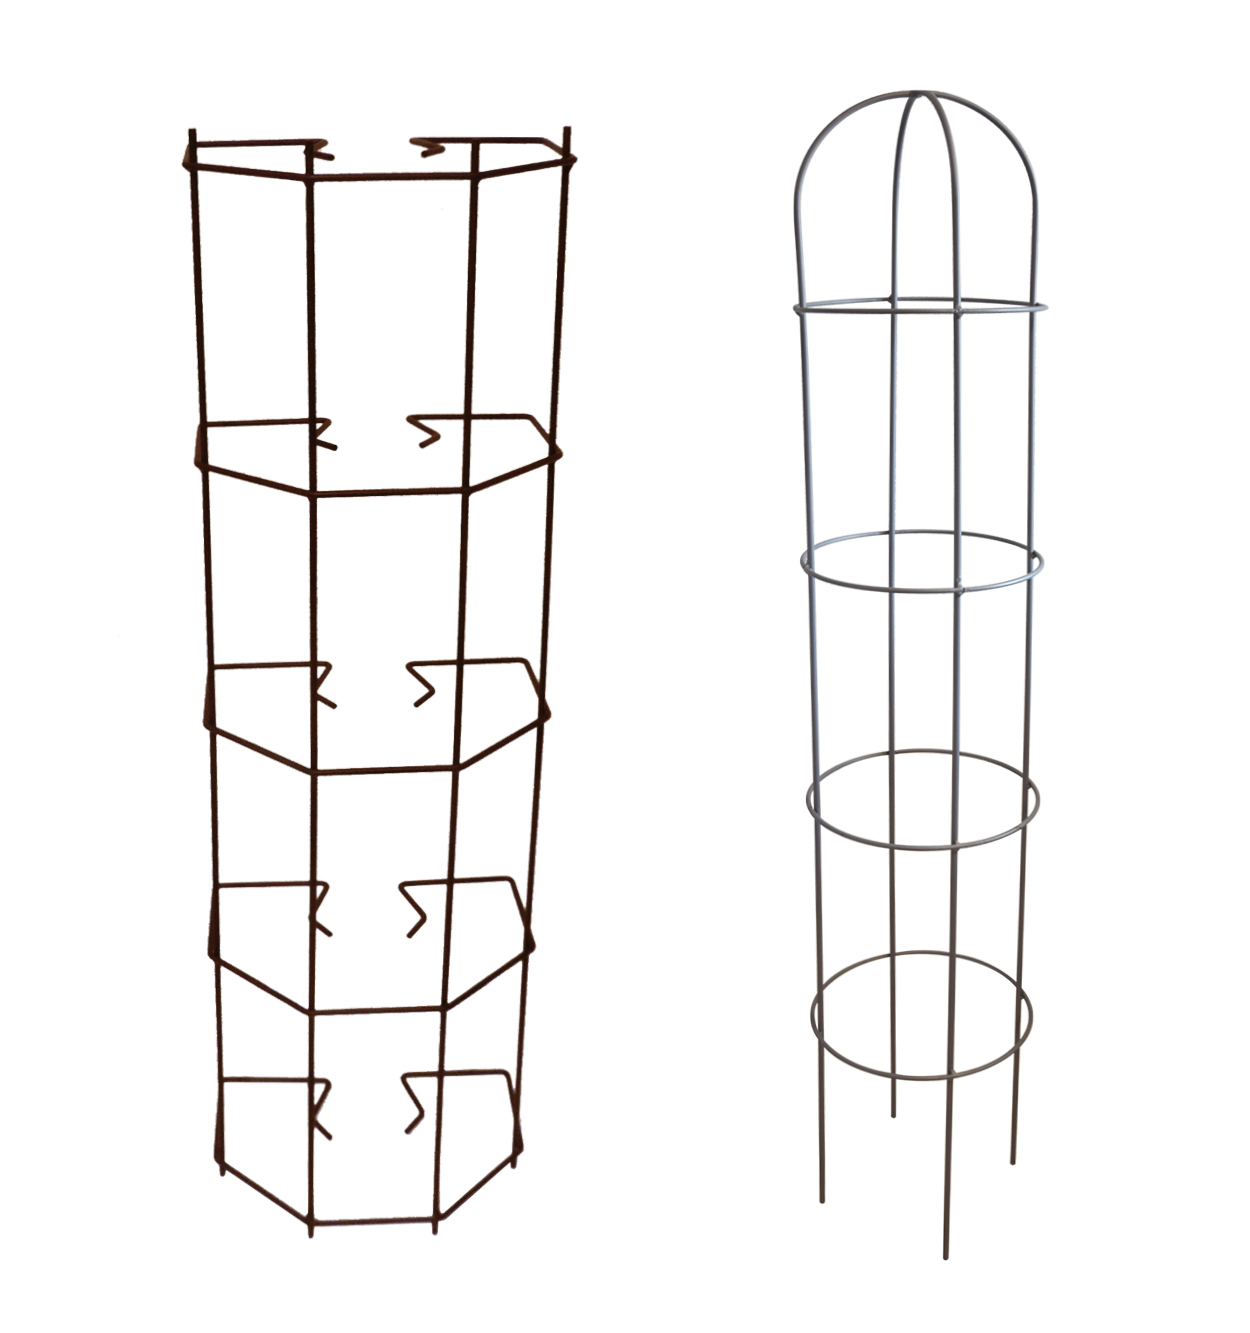 Obeliscos - Treliça de calha